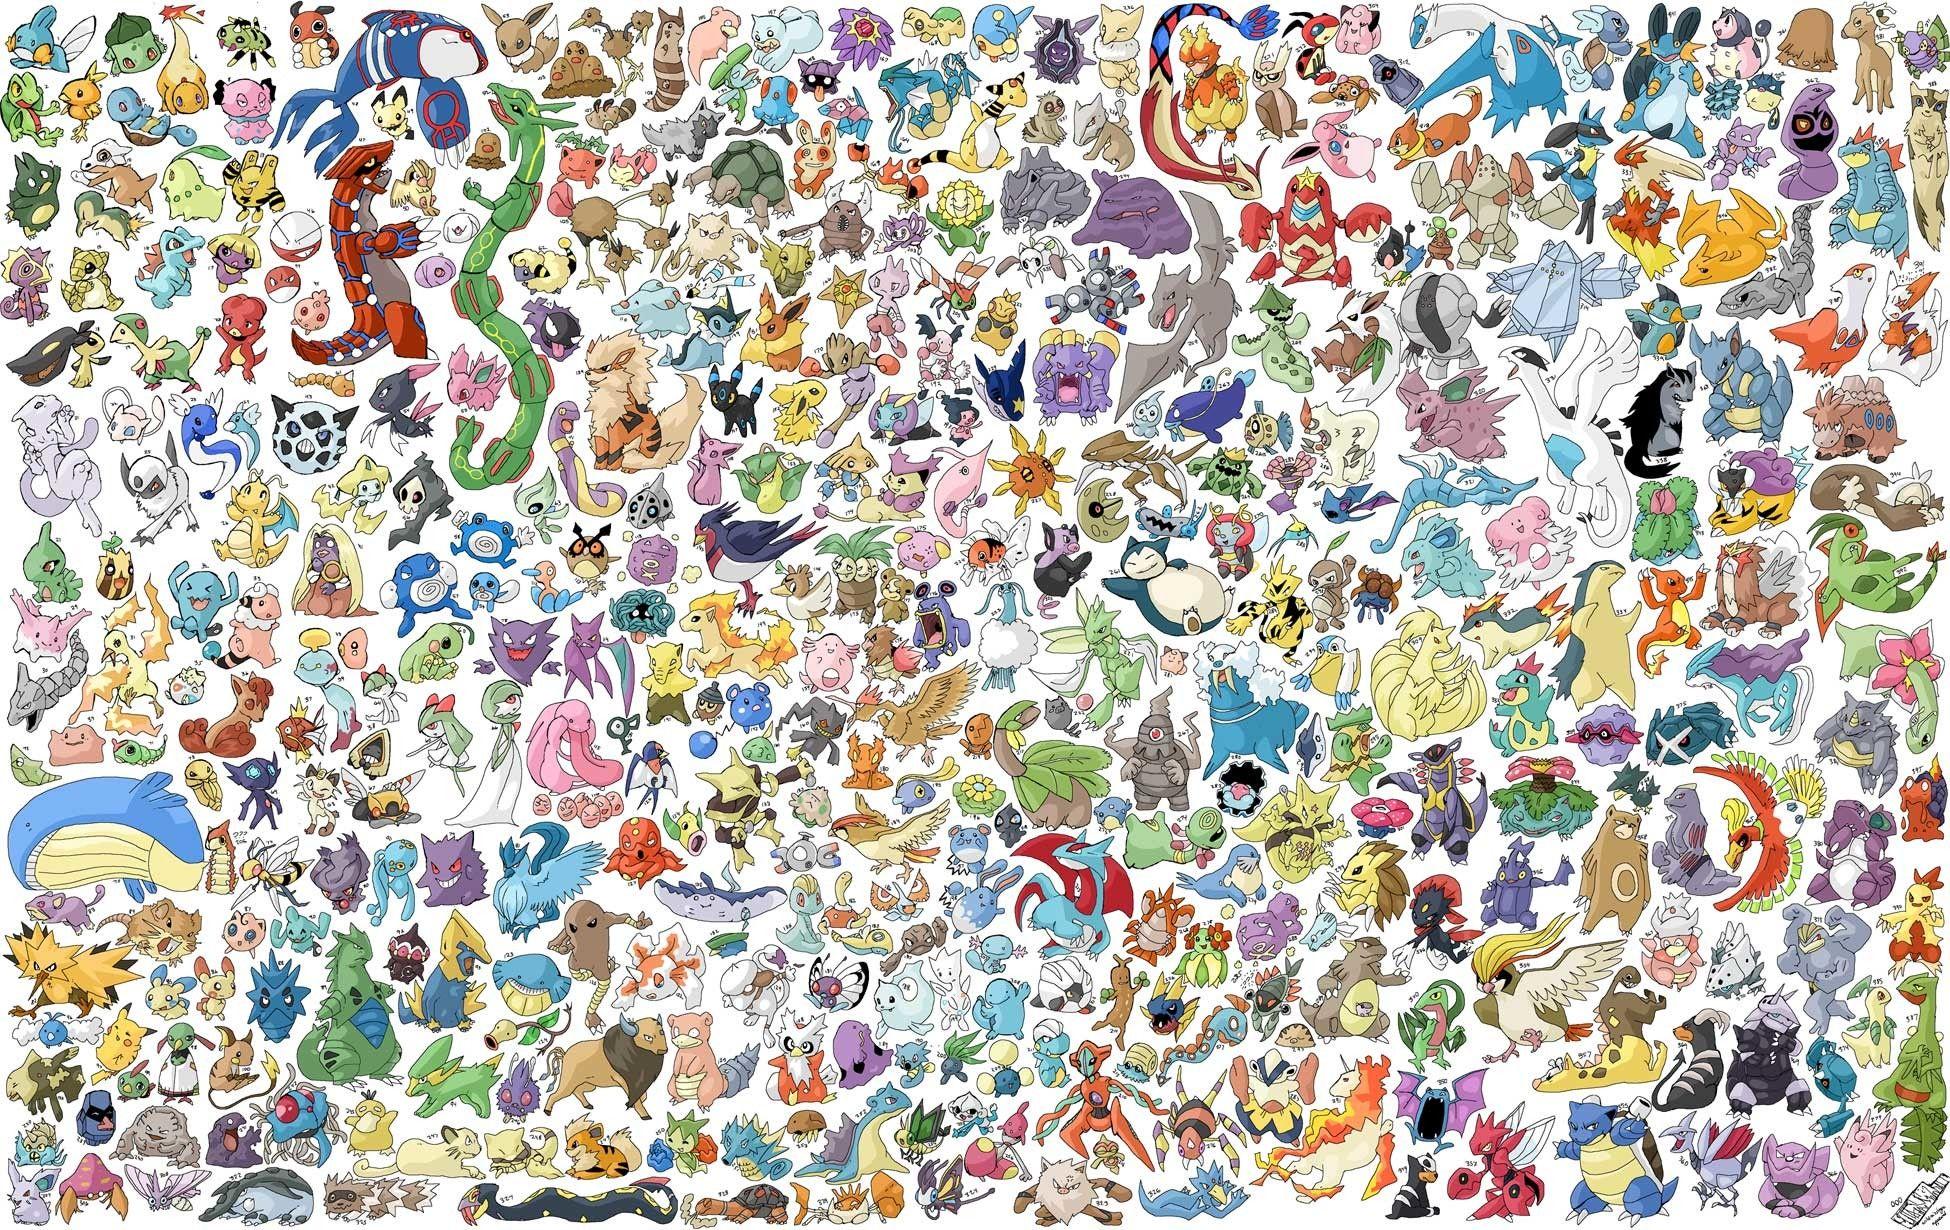 Với hình nền Pokemon đầy màu sắc và thú vị, bạn sẽ có được màn hình tuyệt vời nhất. Từ Pikachu dễ thương đến Charizard quyền năng, bạn có thể tìm thấy những hình ảnh tuyệt đẹp của Pokemon mà bạn yêu thích. Hãy xem ngay image liên quan để khám phá thế giới Pokemon trong tầm tay của bạn.